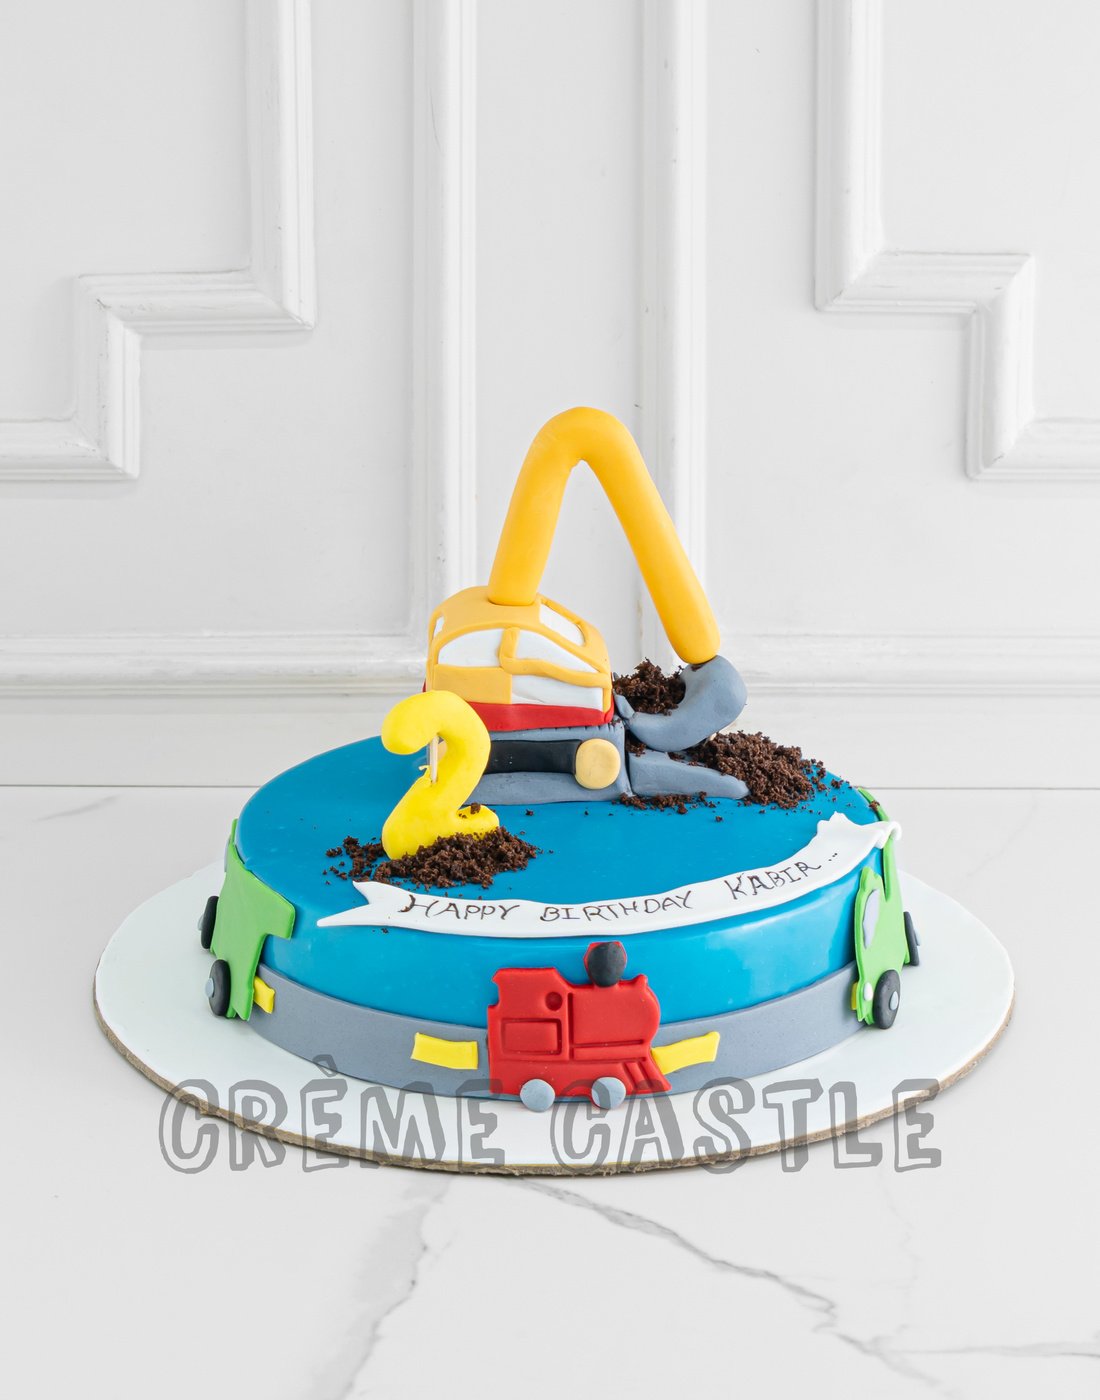 Coolest Crane Truck Birthday Cake Design